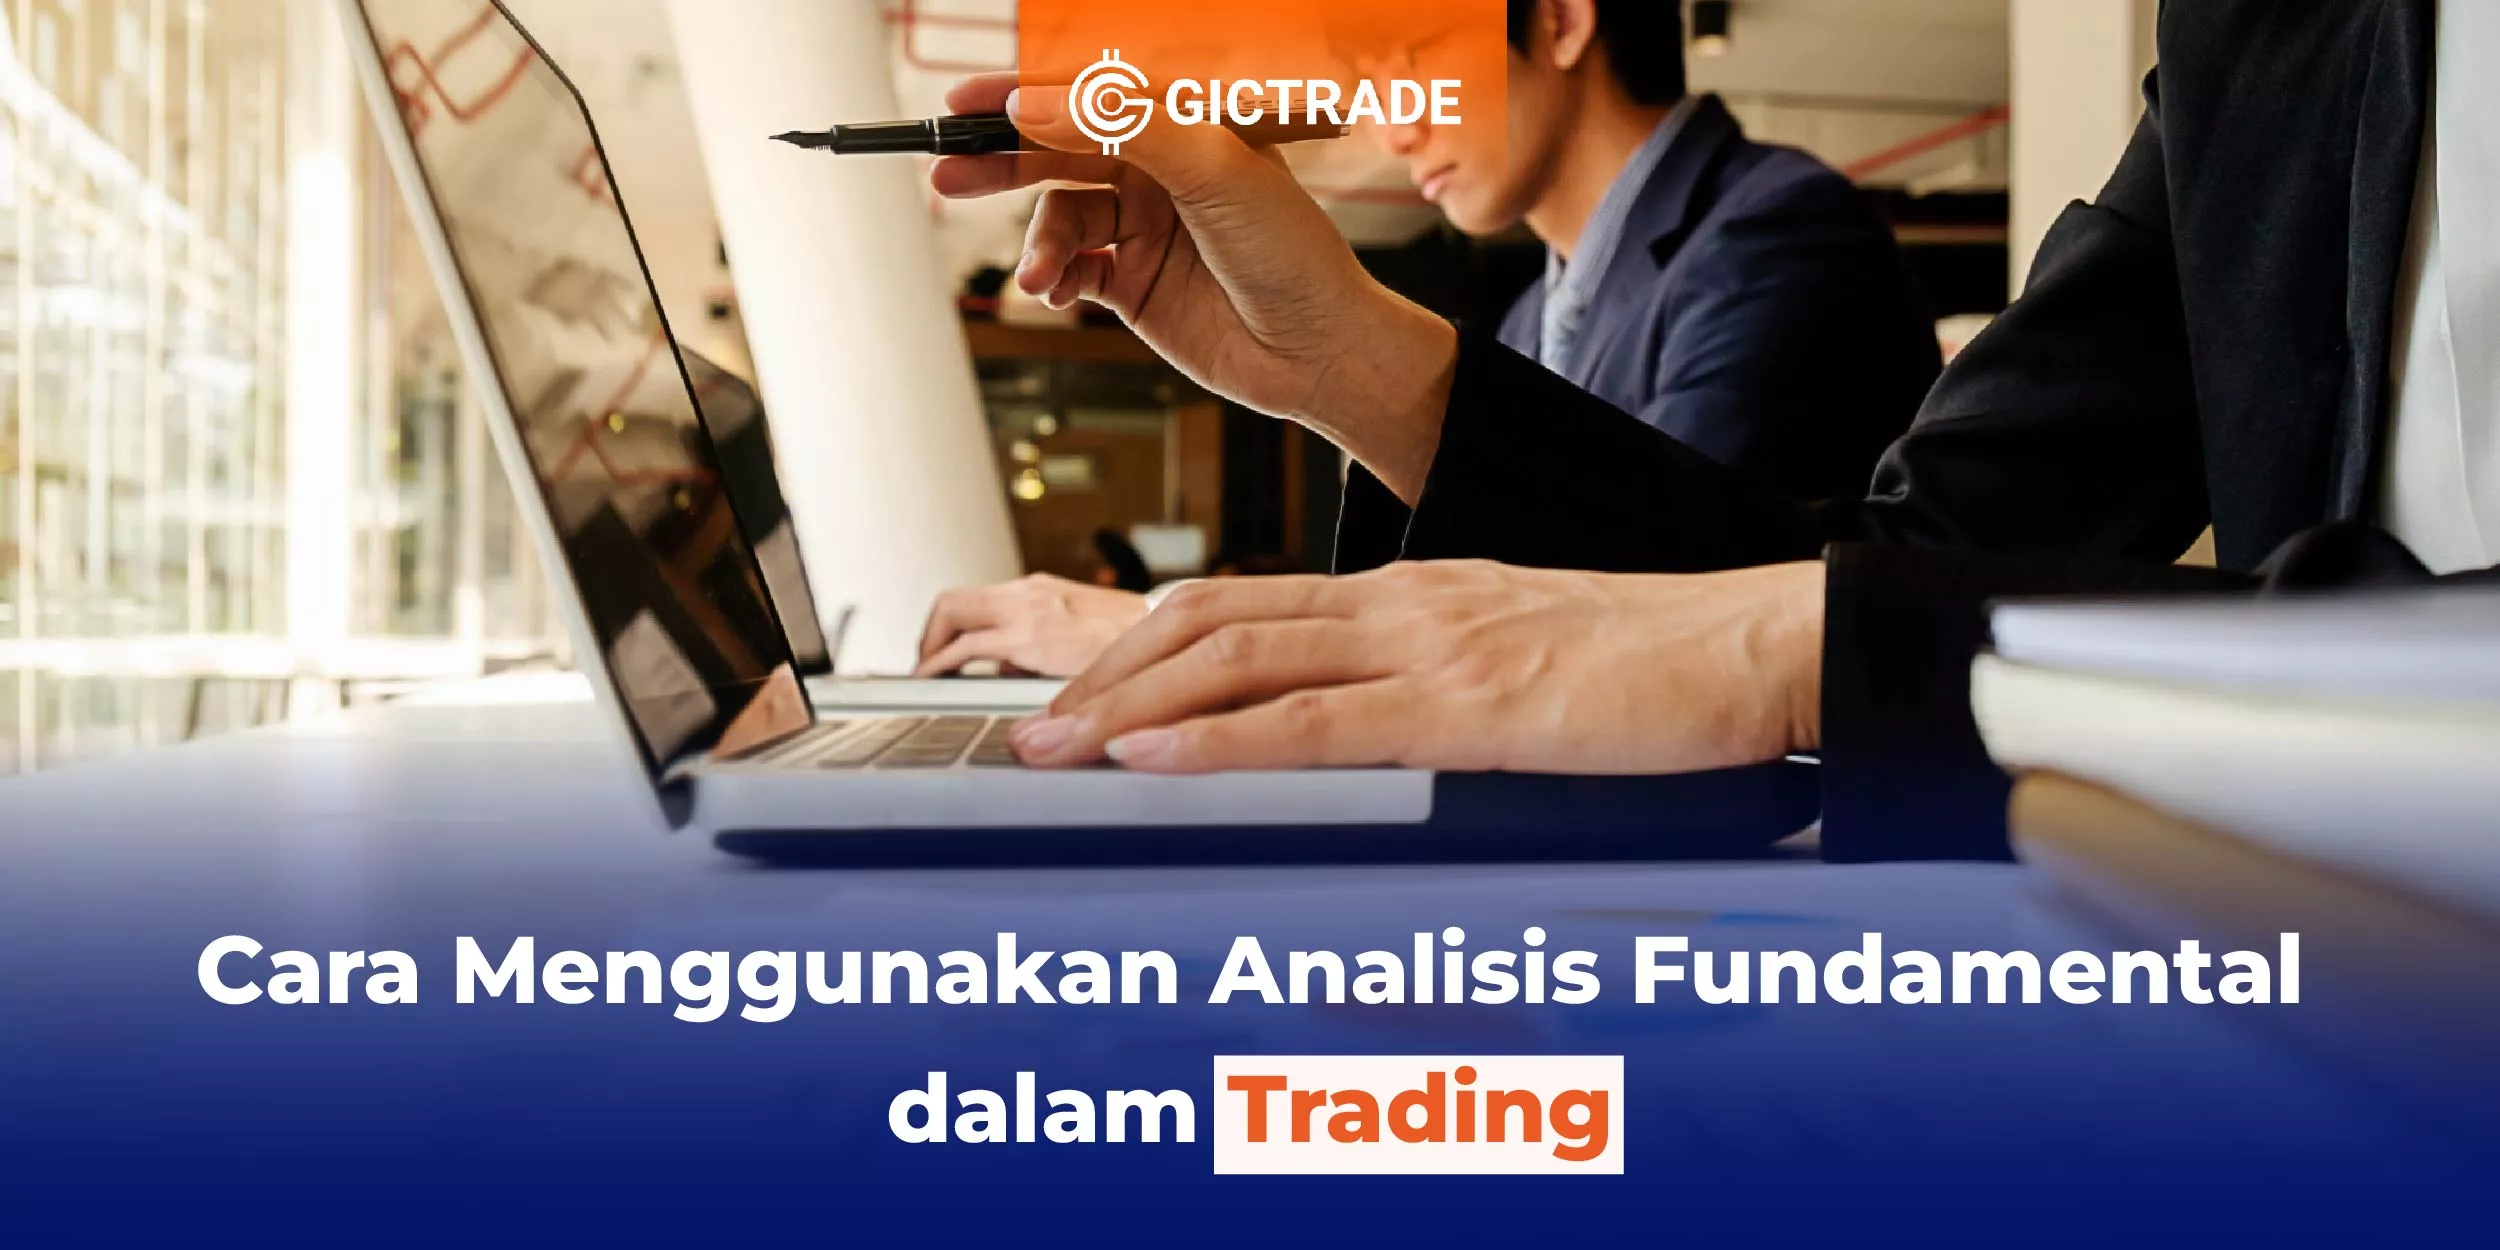 Cara Menggunakan Analisis Fundamental dalam Trading